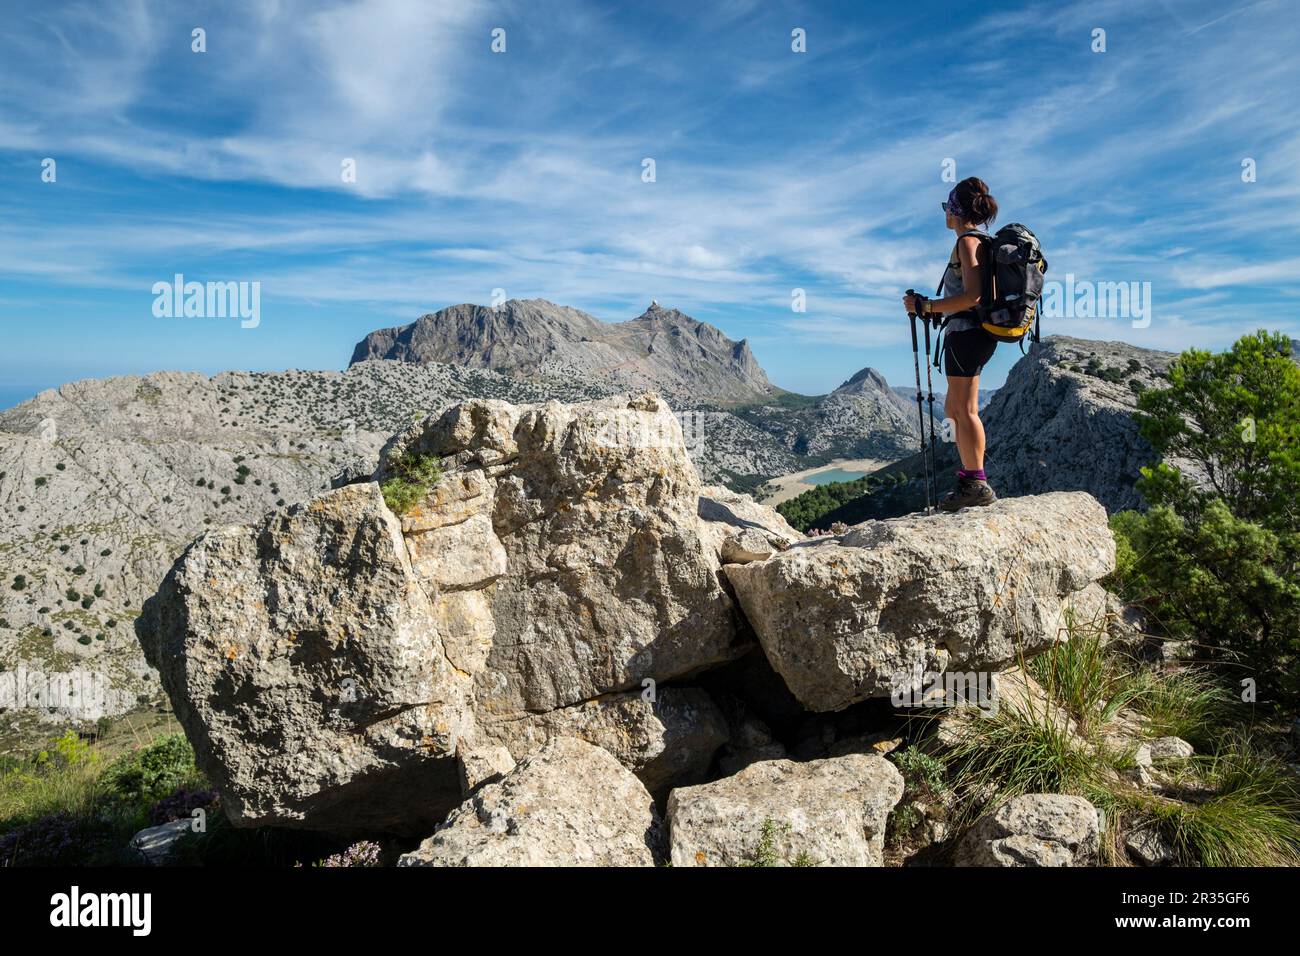 escursionista contemplando el valle de Binimorat y el Puig Major, 1445 metros de altitud, Paraje natural de la Serra de Tramuntana, Mallorca, balearic islands, Spain. Stock Photo